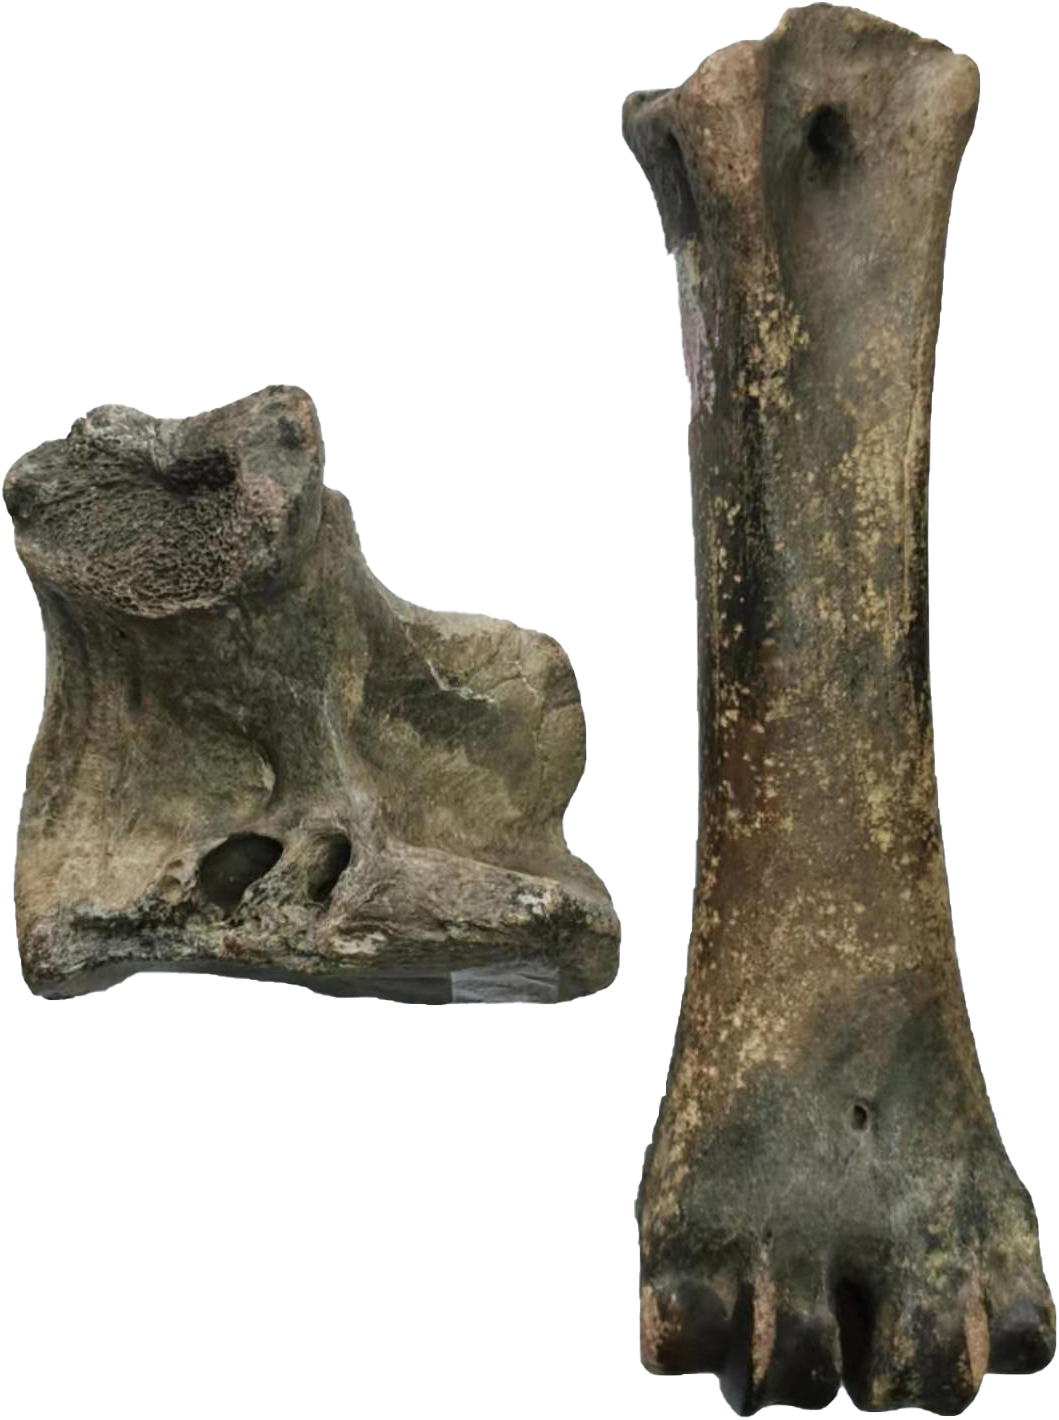 老虎骨头化石图片